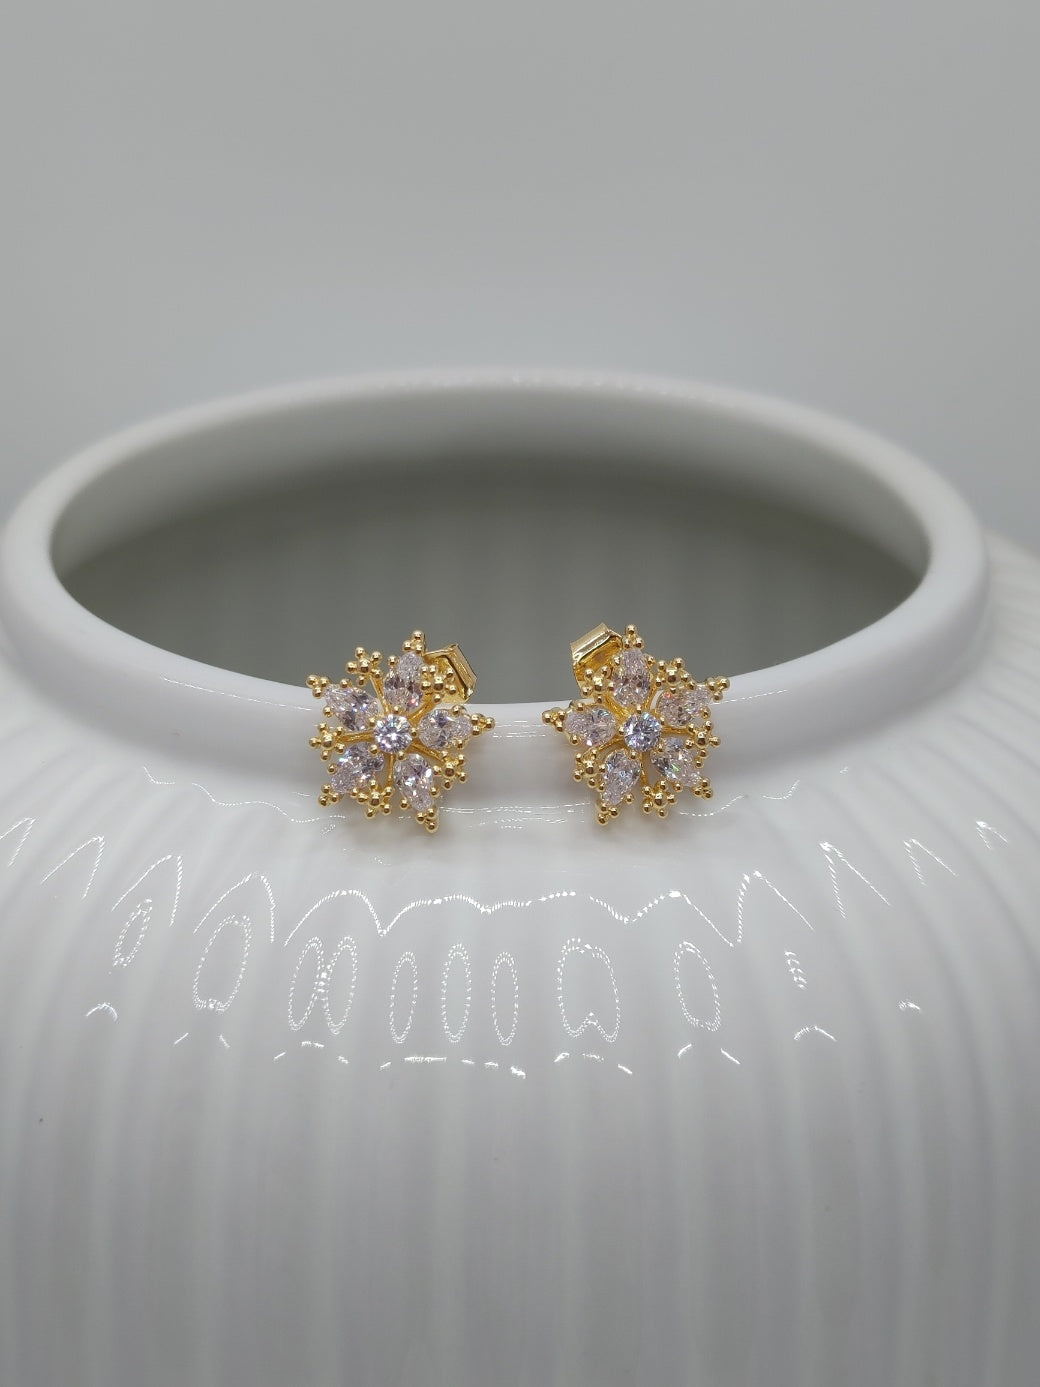 'Cherry blossom' earrings